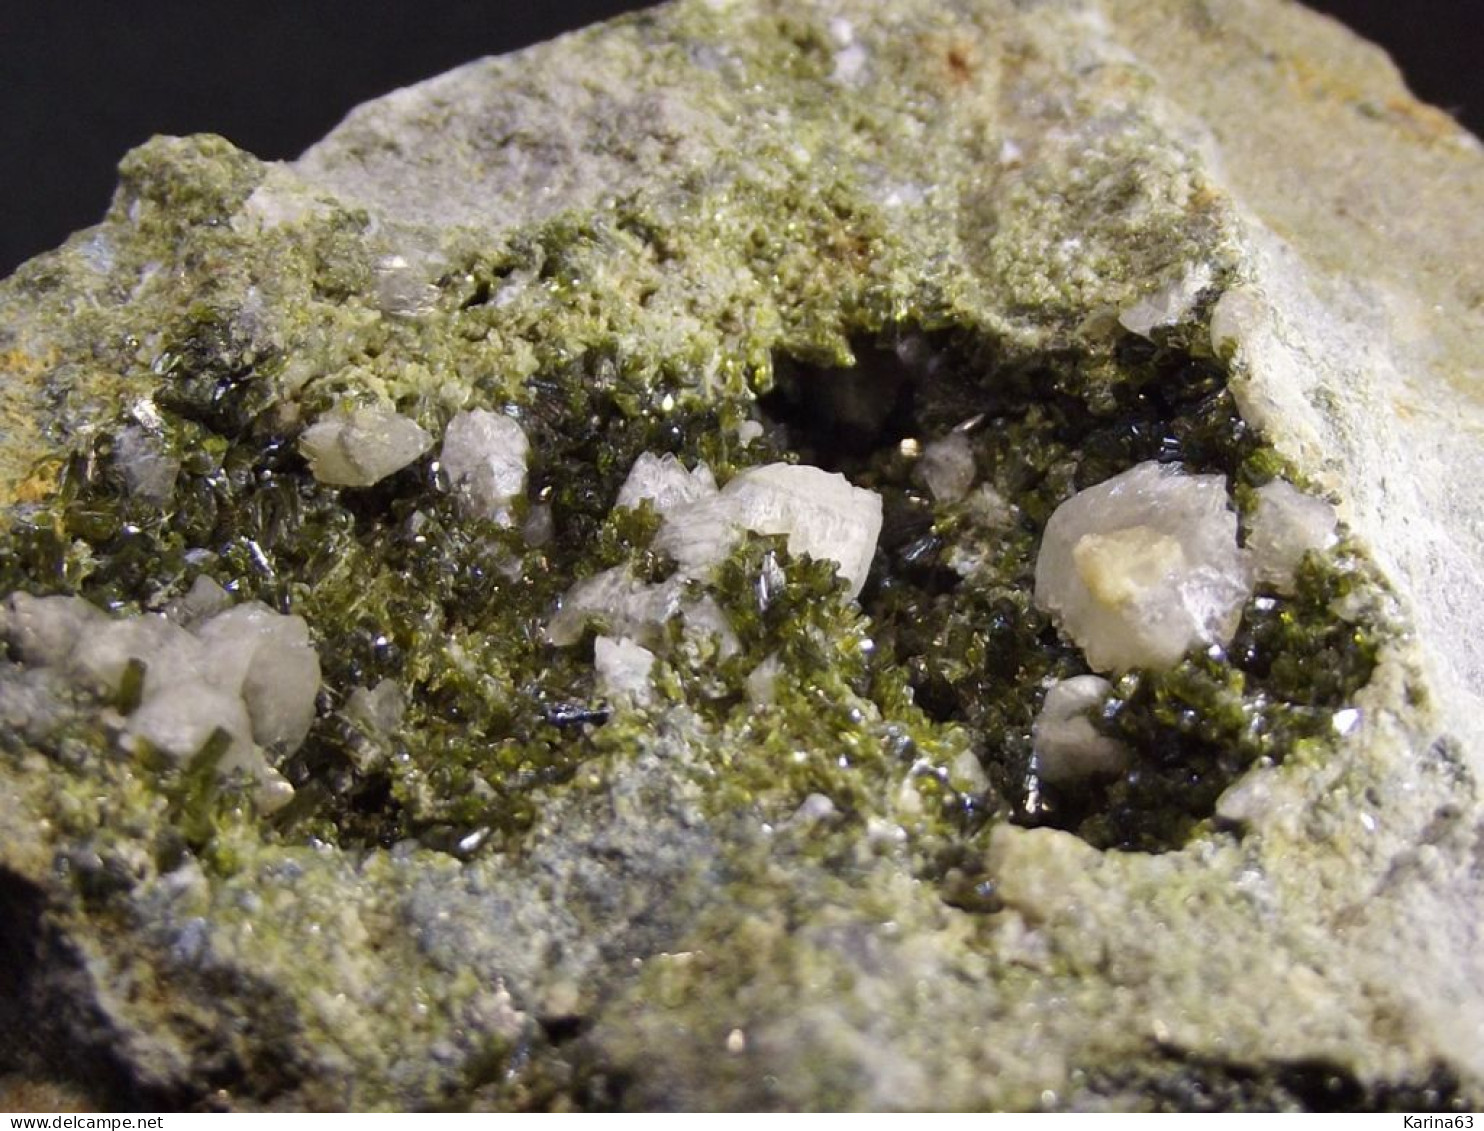 Epidote With Gypsum And Calcite ( 6 X 4 X 2 Cm.) - Senhora Da Luz  Quarry - Obidos - Leiria District - Portugal - Minerali